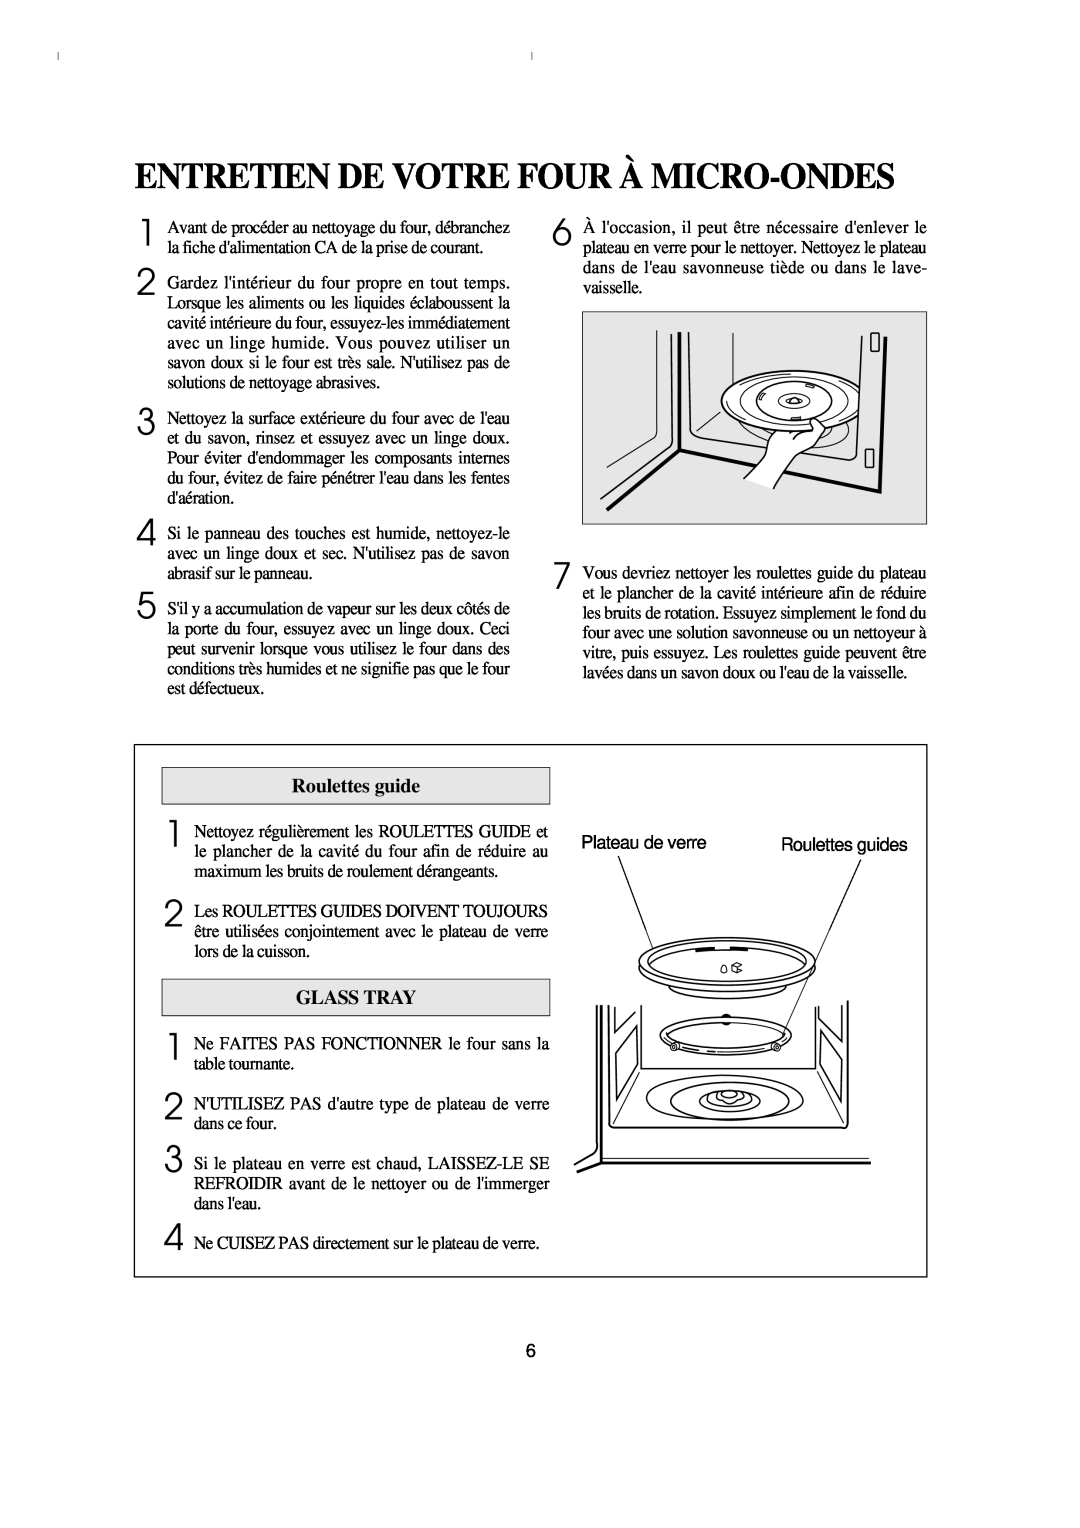 Emerson MW8993WC/BC owner manual Entretien De Votre Four À Micro-Ondes, Roulettes guide, Glass Tray 